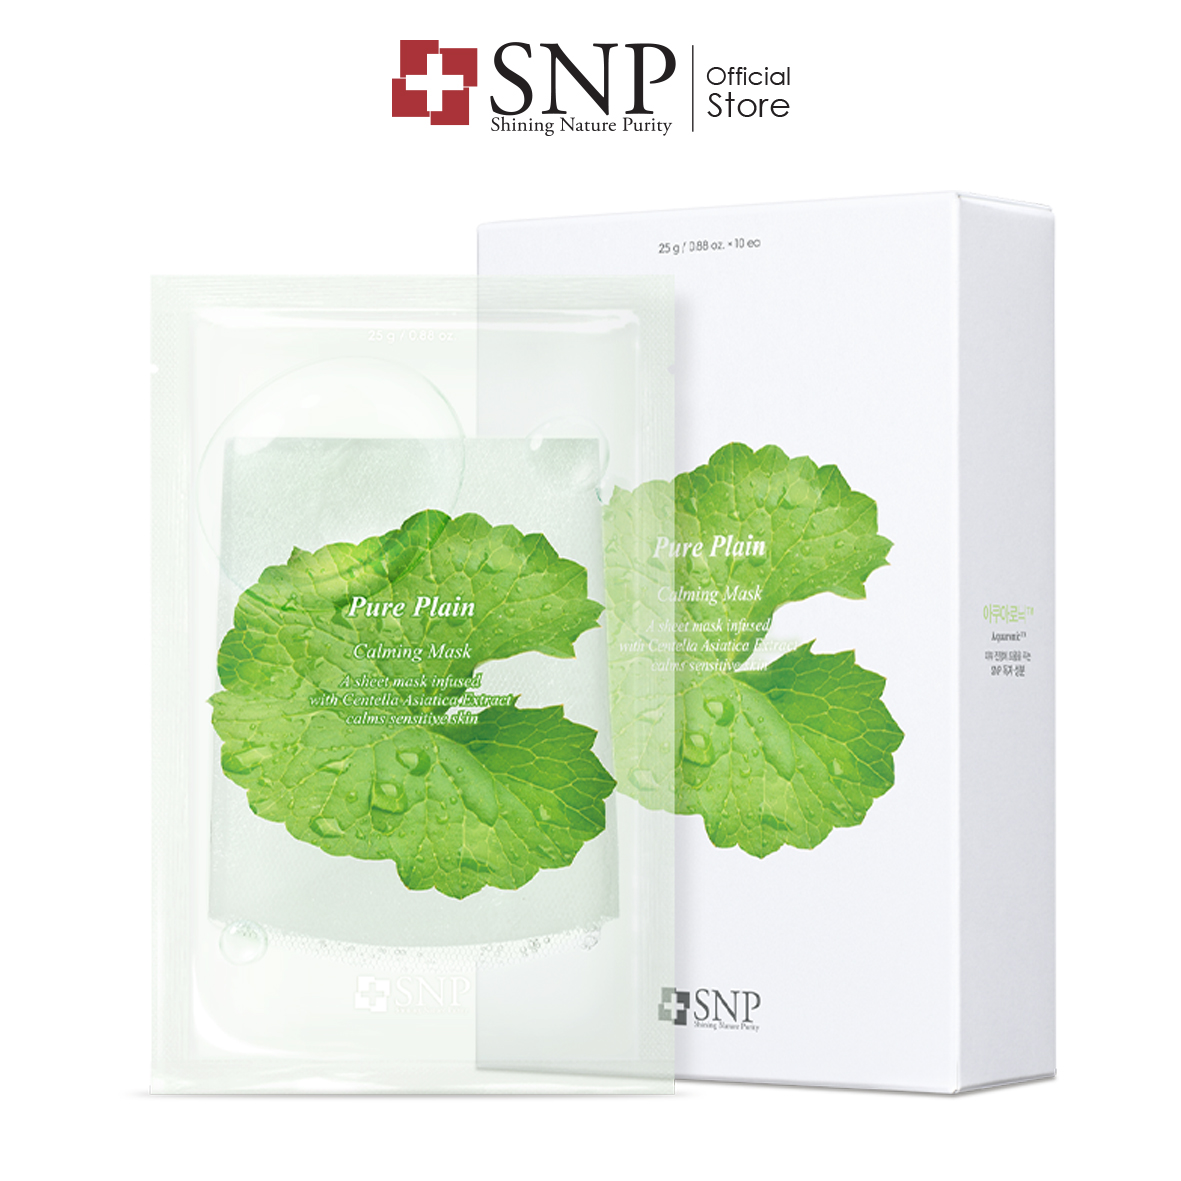 SNP Pure Plain Calming Mask (10s)